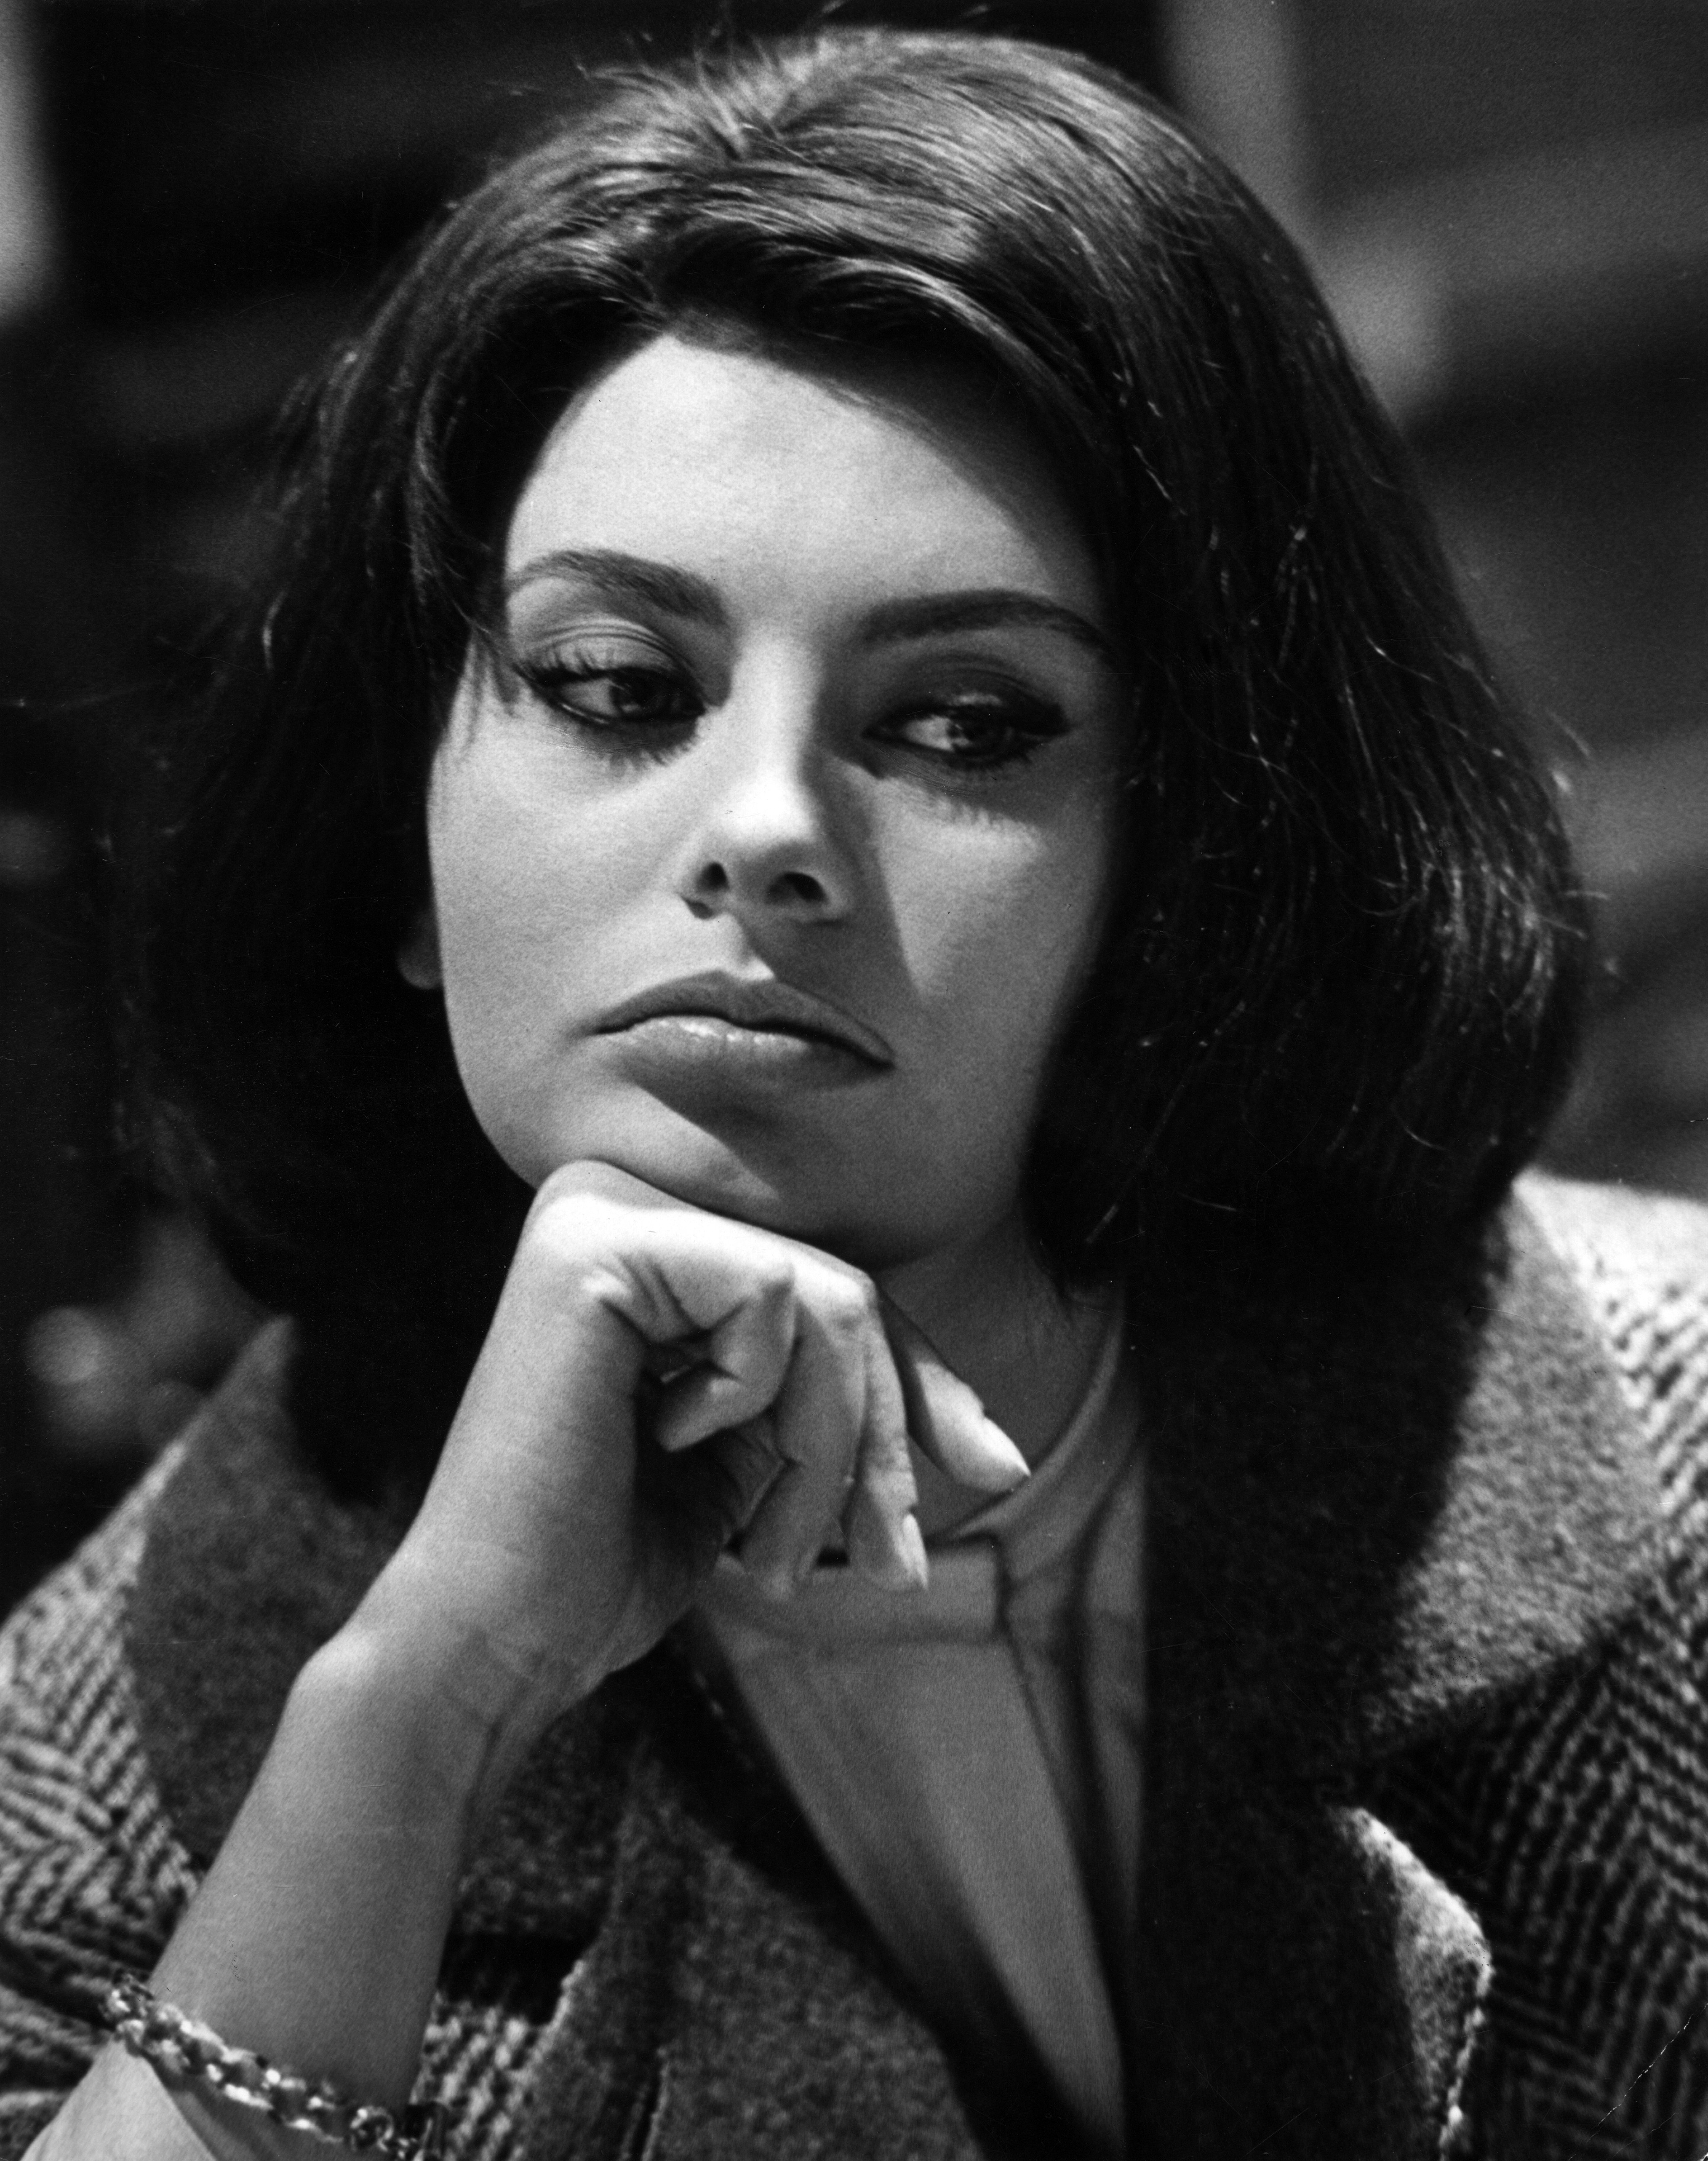 Geschichte schreibende Oscar-Preisträgerin Sophia Loren in einer Szene aus "Five Miles to Midnight", 1962. | Quelle: Getty Images